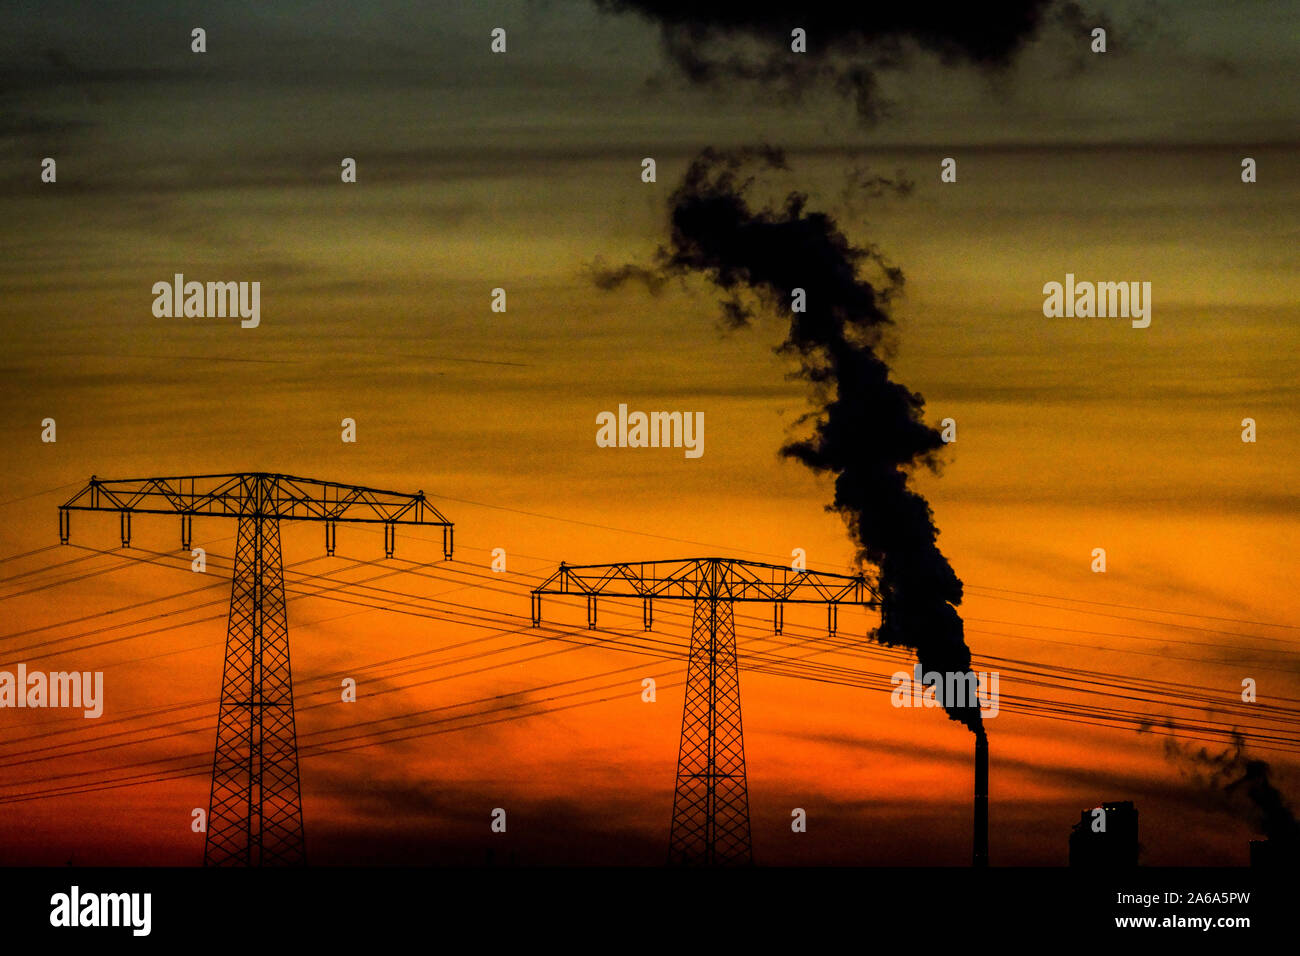 Réchauffement climatique fumée de cheminée au coucher du soleil Allemagne lignes électriques changement climatique échange d'émissions changement climatique émissions de co2 augmentation de la fumée réchauffement climatique Banque D'Images